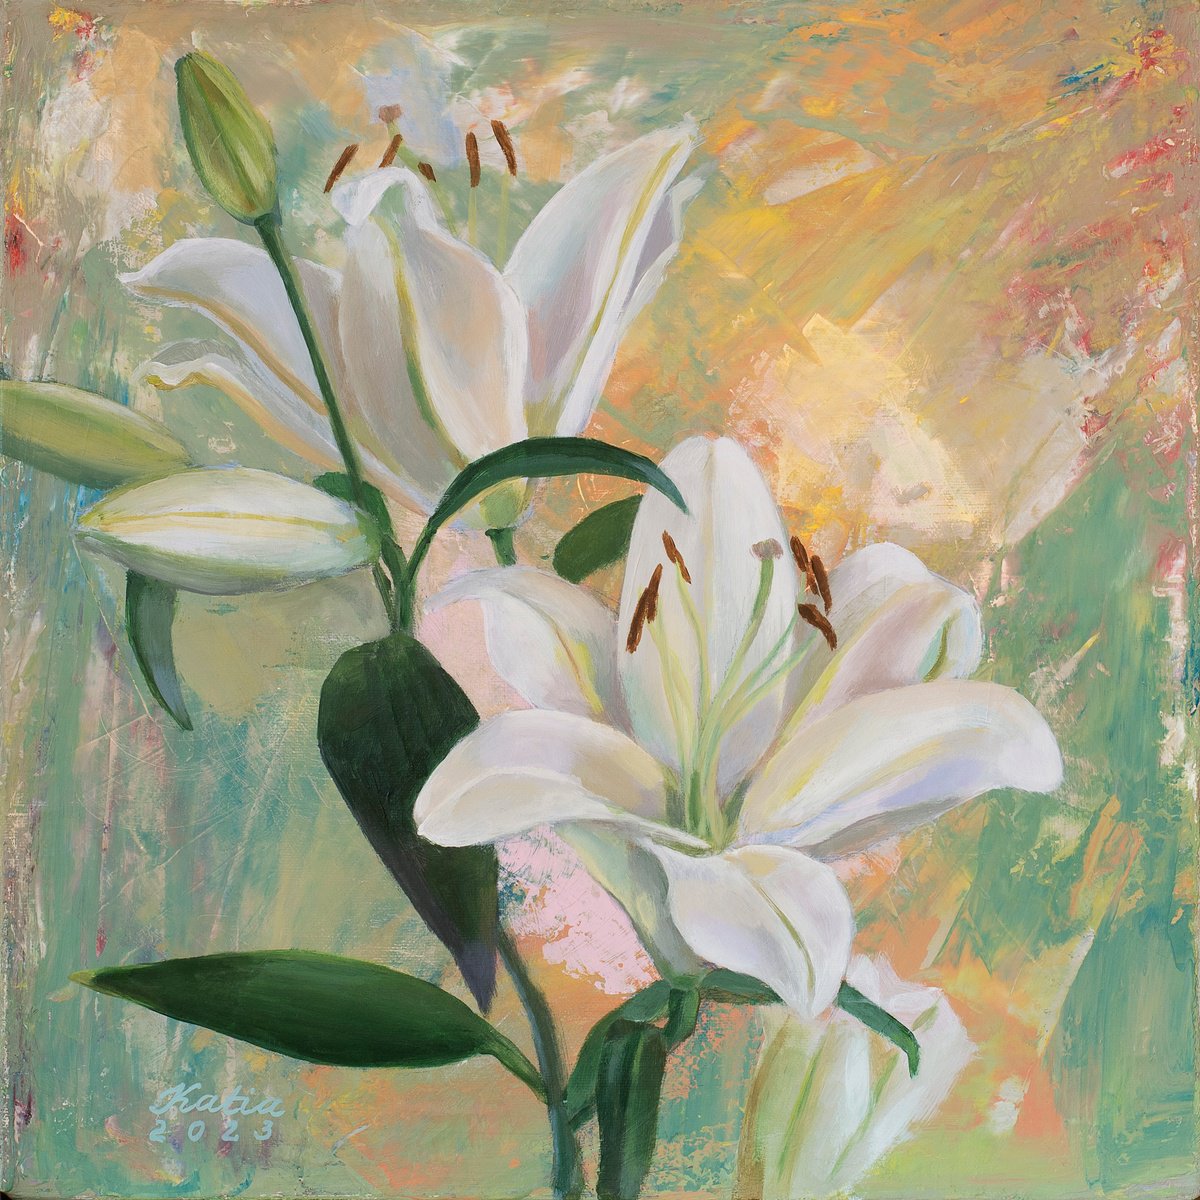 Lily by Katsiaryna Ozdemir